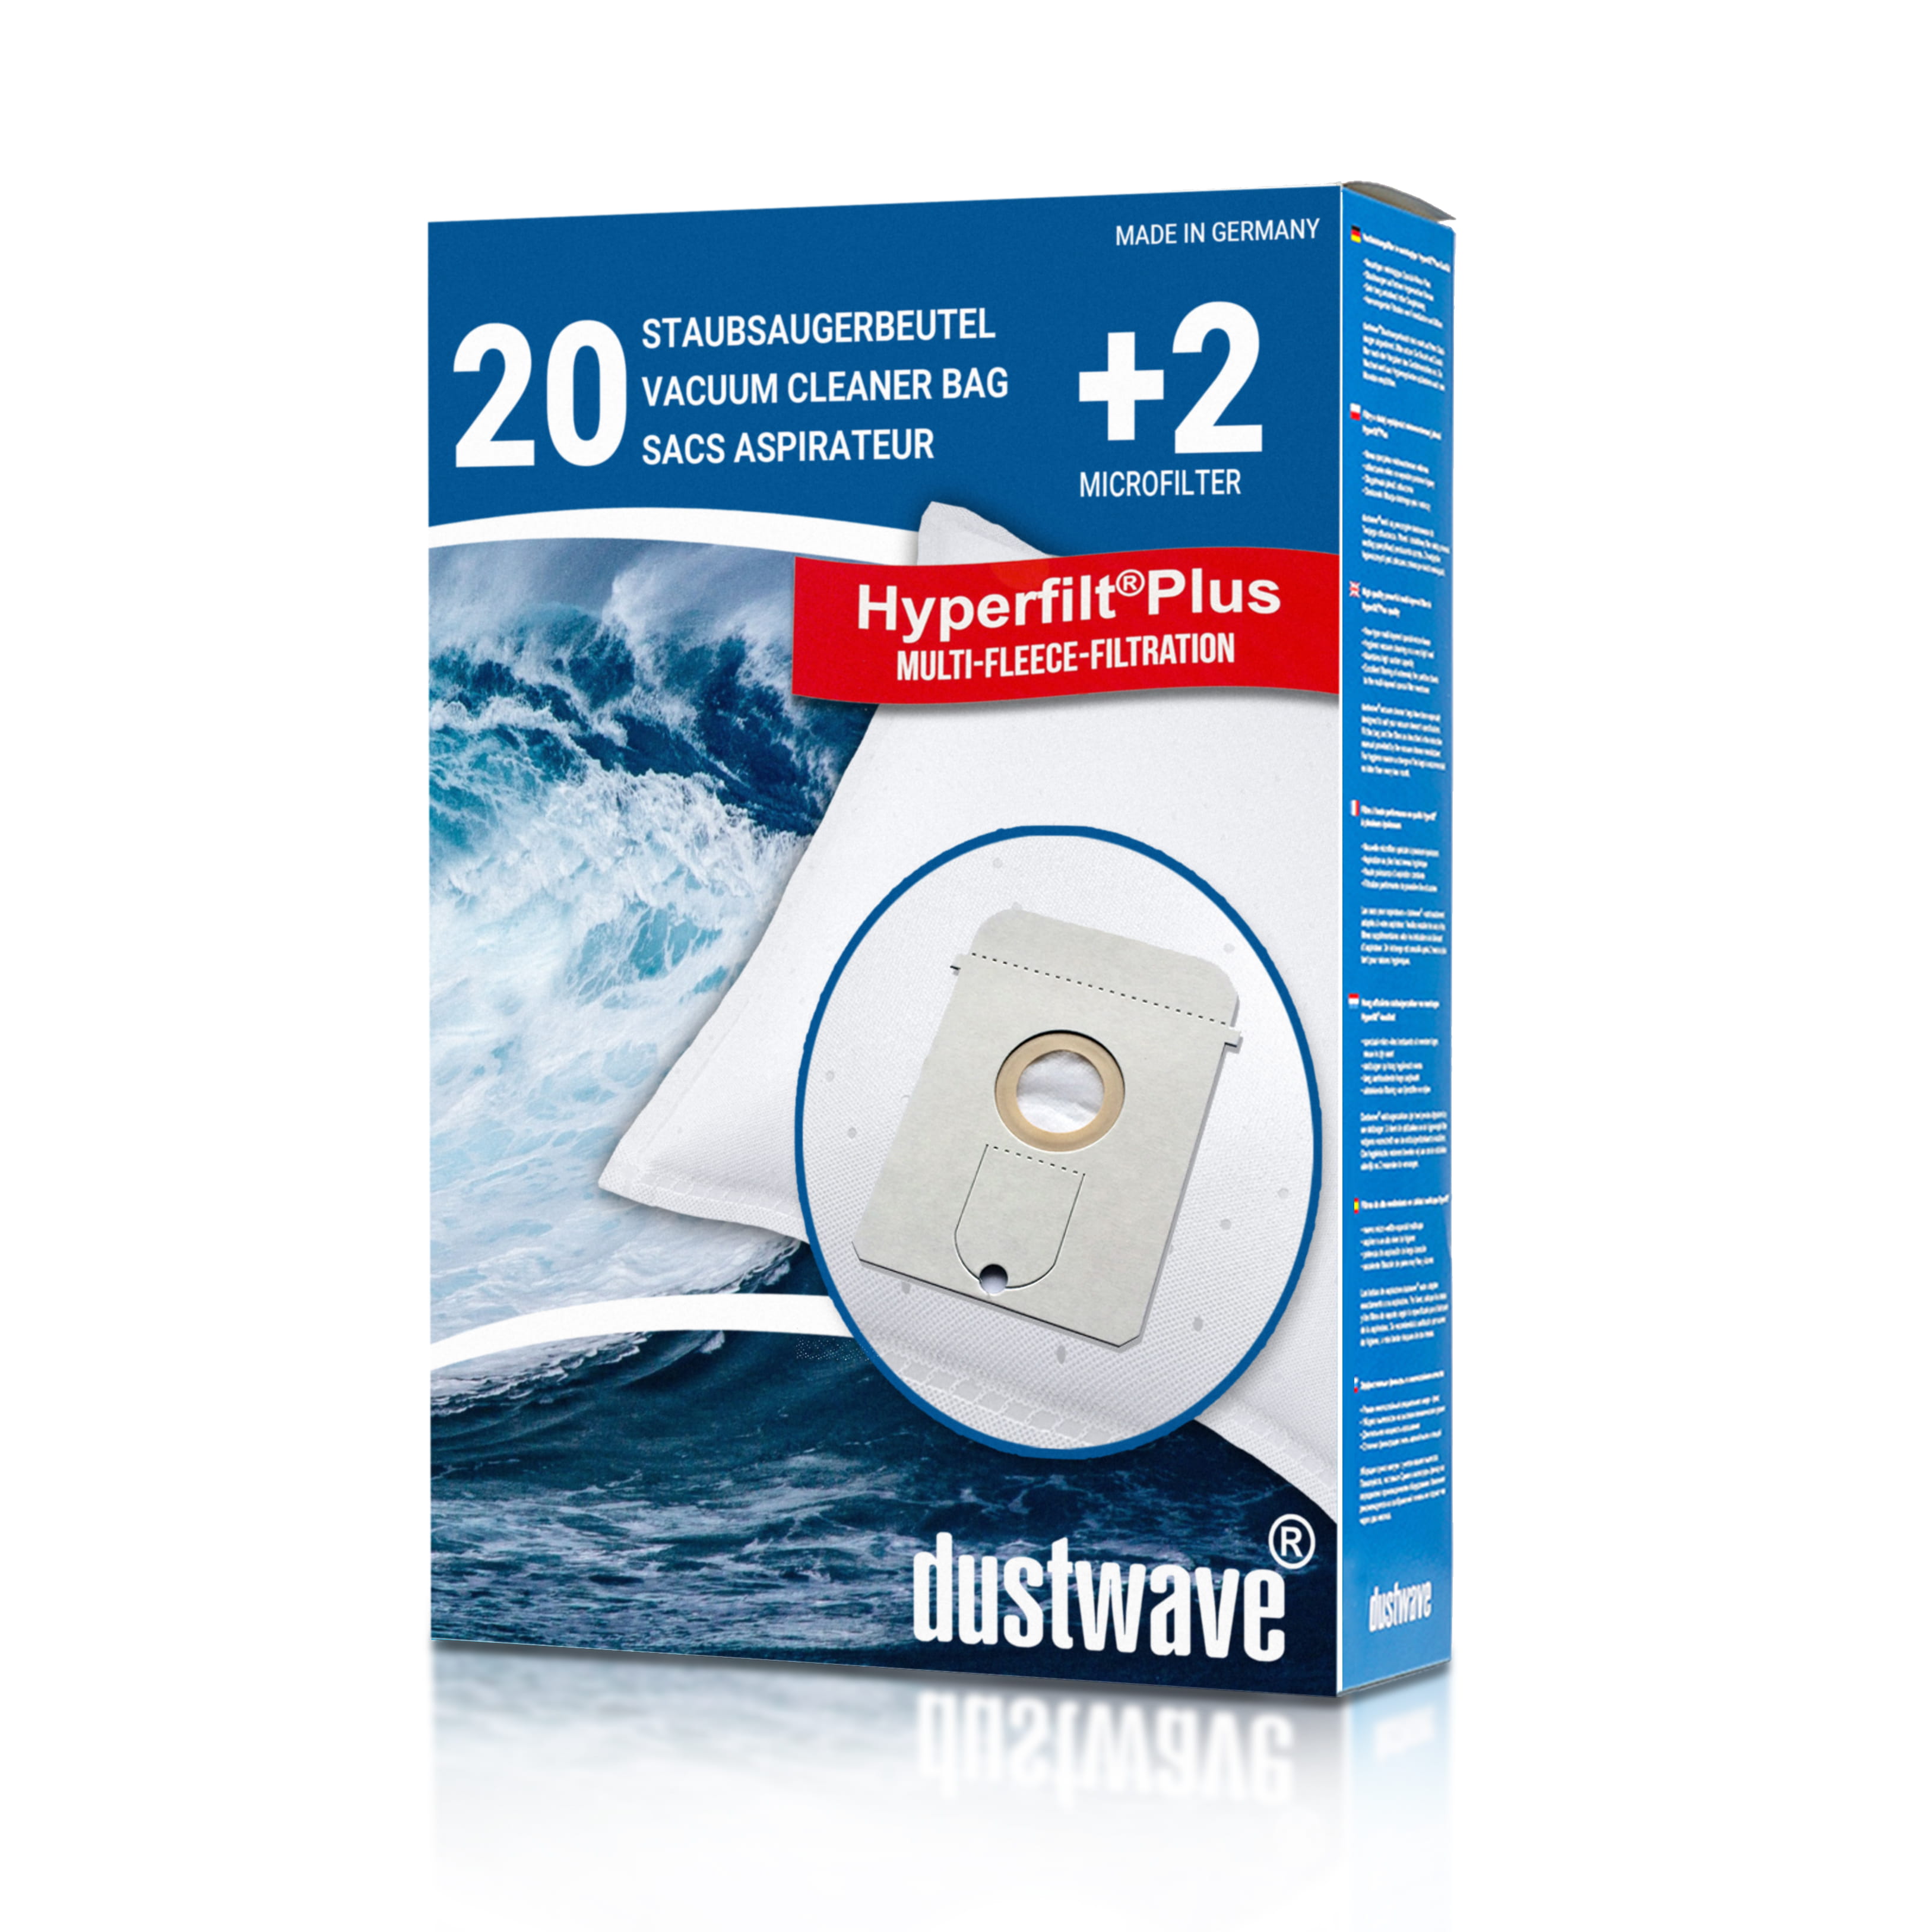 Dustwave® 20 Staubsaugerbeutel für AEG Vampyr 769 i Electronic - hocheffizient, mehrlagiges Mikrovlies mit Hygieneverschluss - Made in Germany